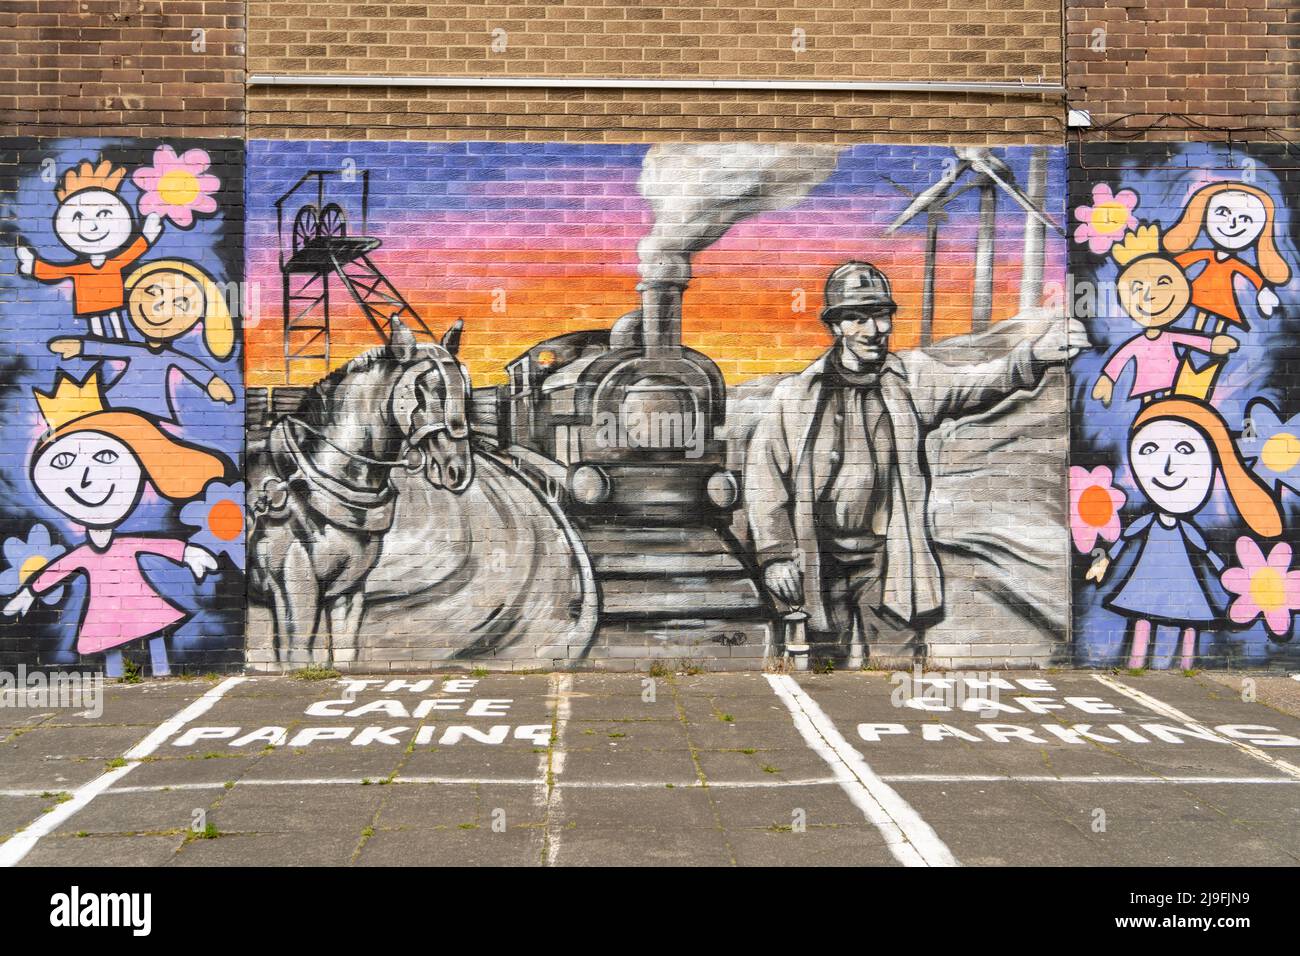 Un murale su un muro nella città di Lynemouth, Northumberland, Regno Unito, racconta la storia della sua industria e cultura - dall'estrazione del carbone alle fattorie eoliche. Foto Stock